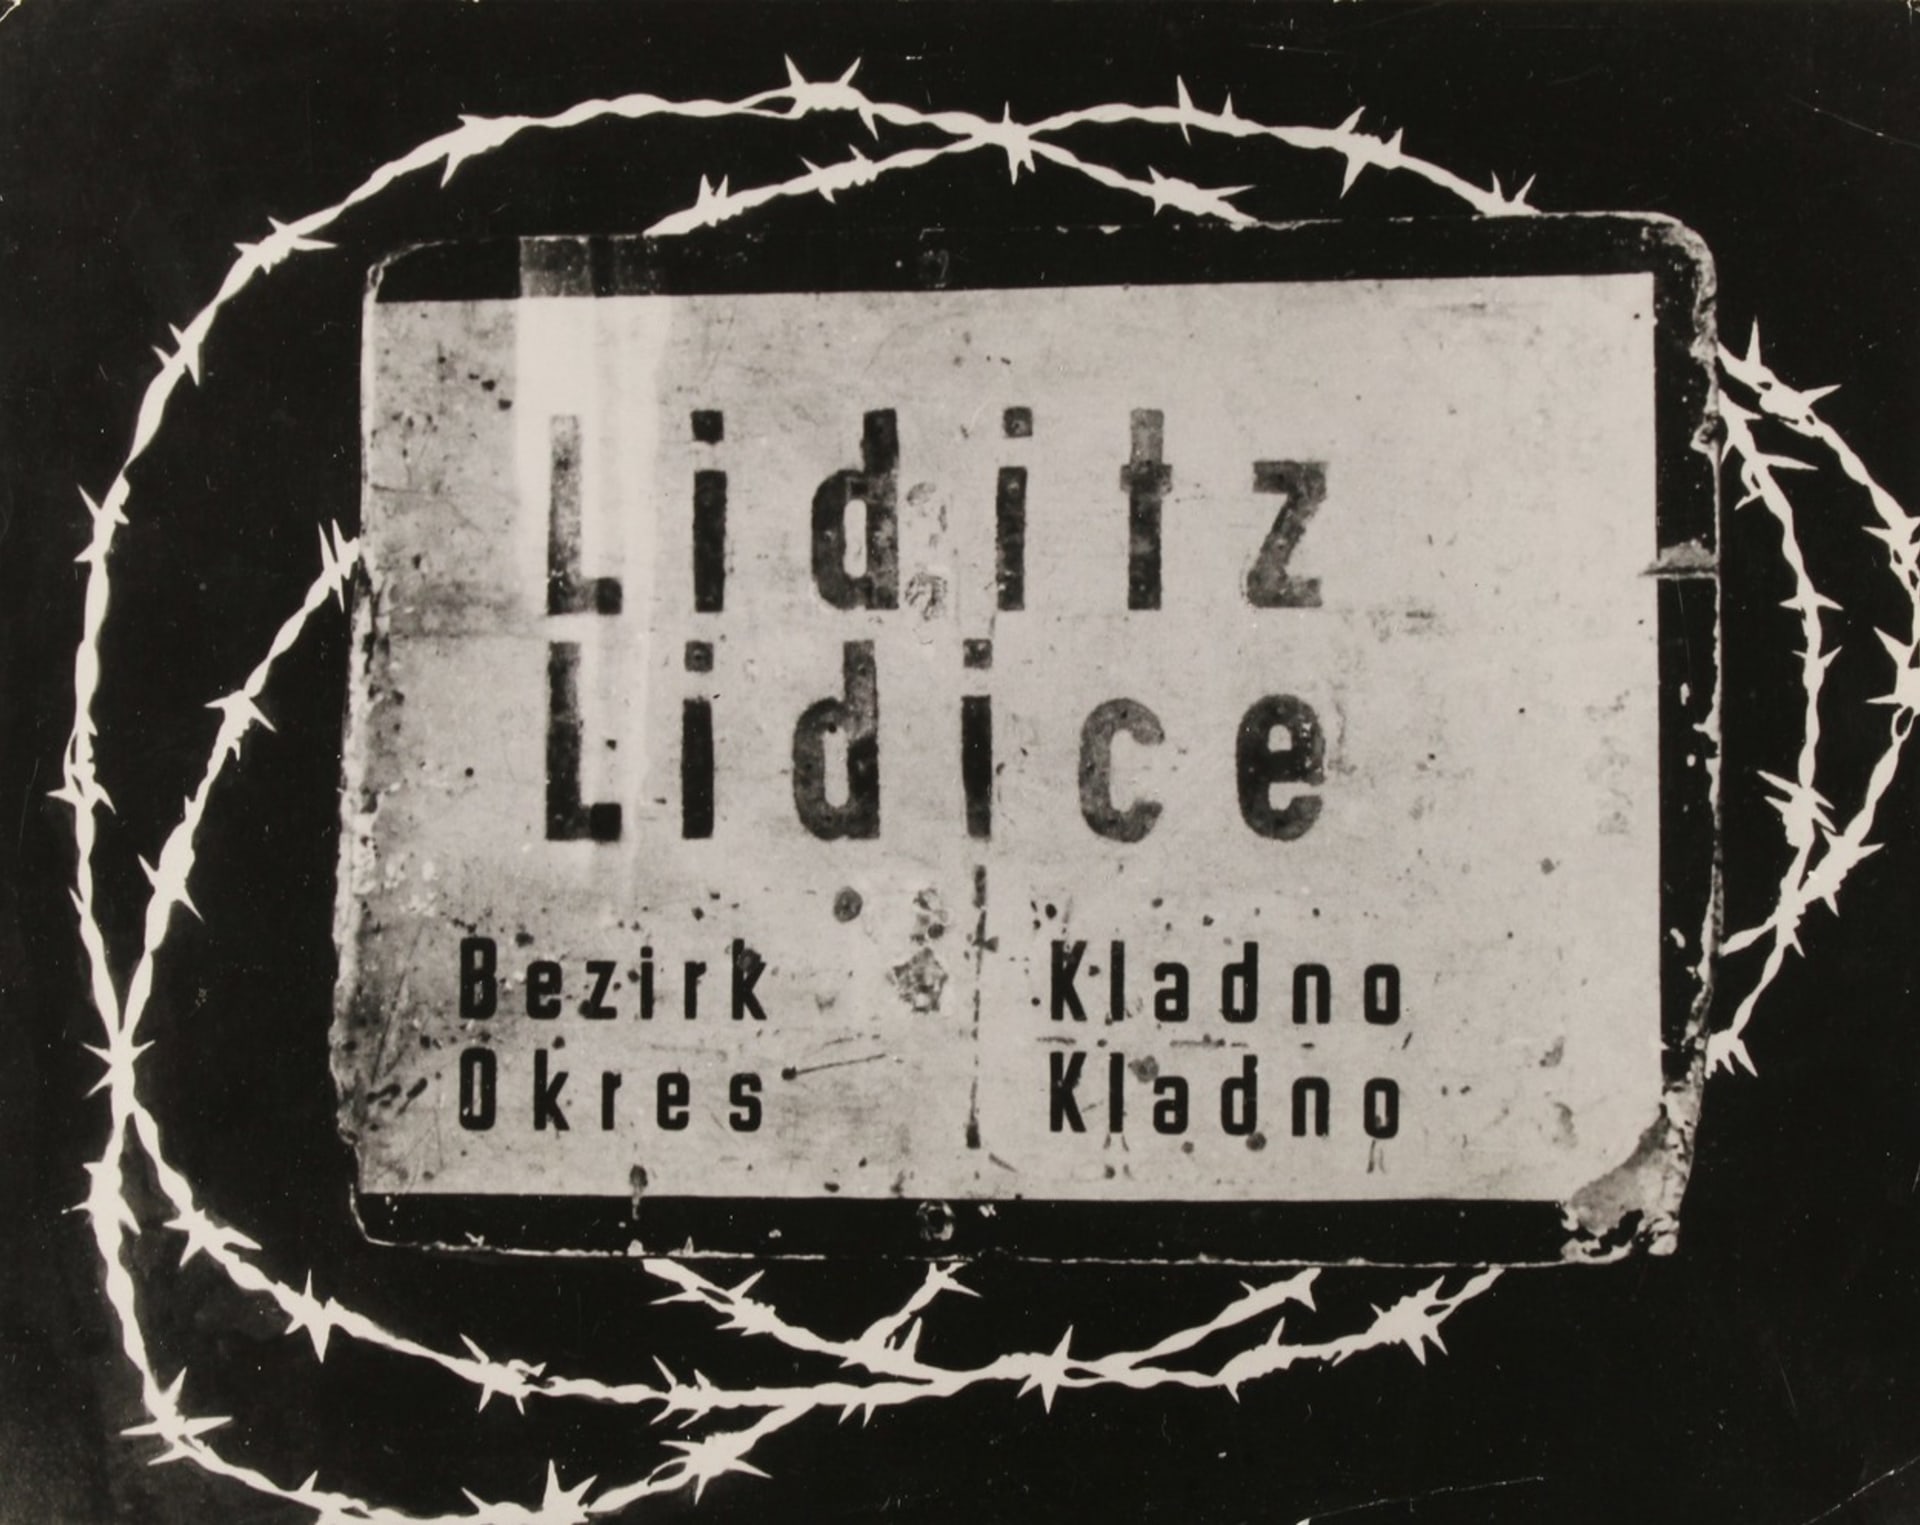 Obec Lidice byla obětí za atentát na Heydricha